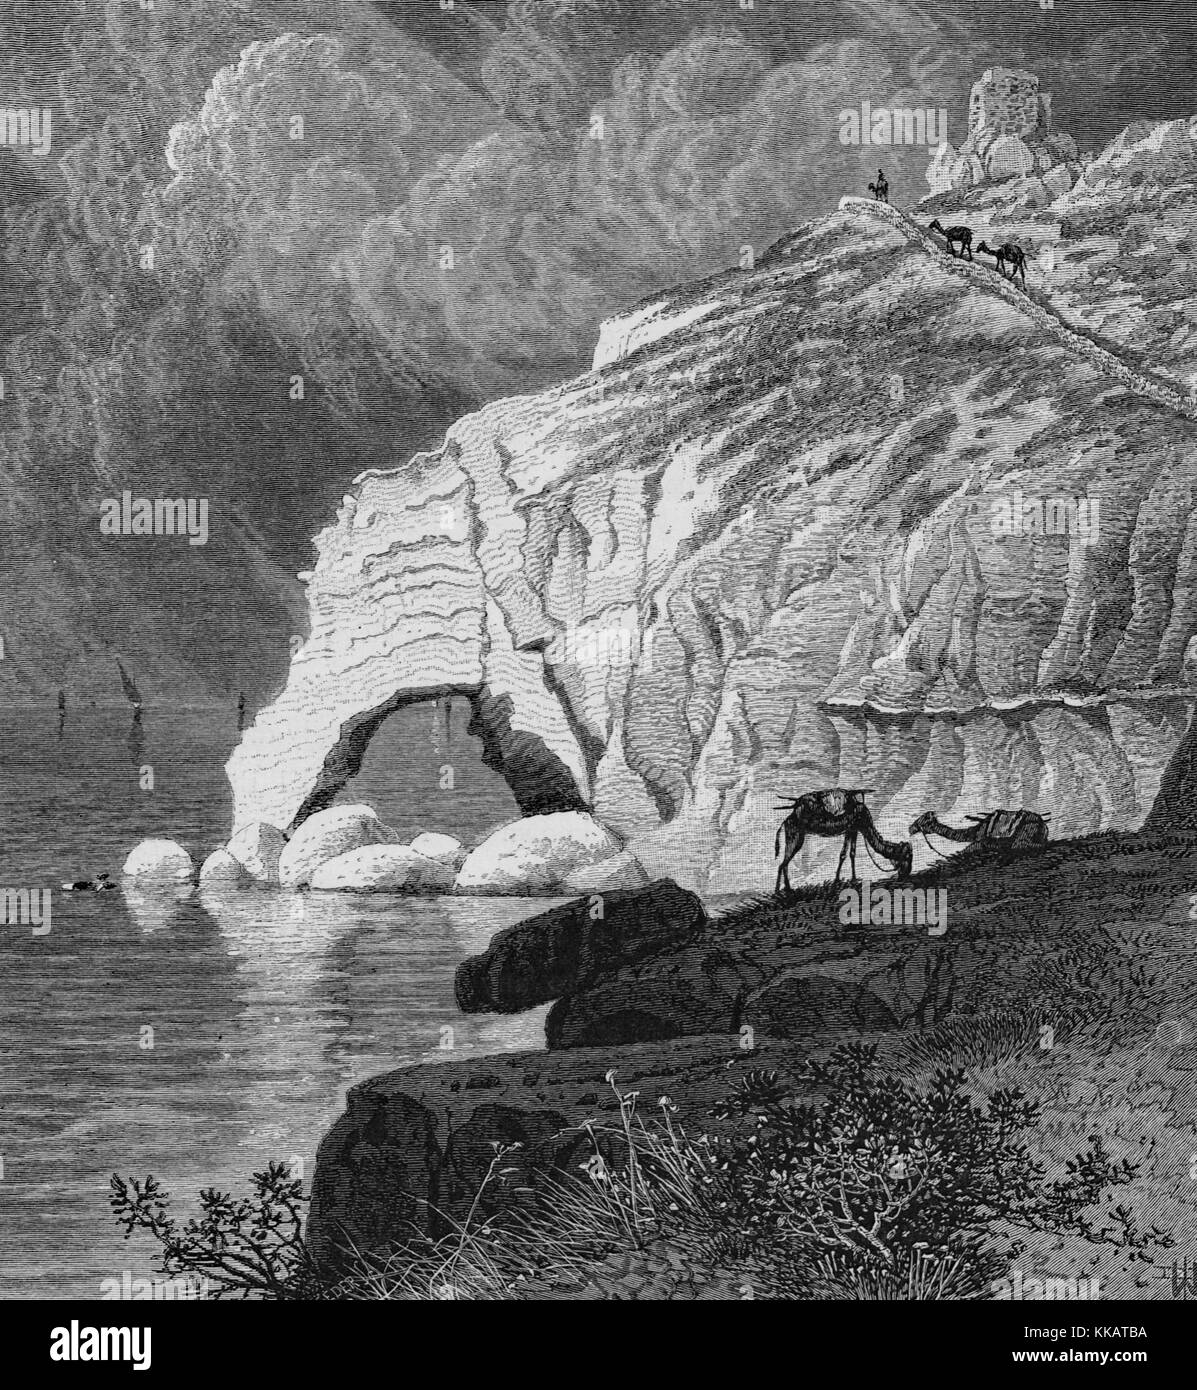 Una representación de la escalera del neumático, una roca cortada carretera que se creía que era el límite norte de la Tierra Santa judía según fuentes talmúdica, Líbano, 1882. Desde la Biblioteca Pública de Nueva York. Foto de stock